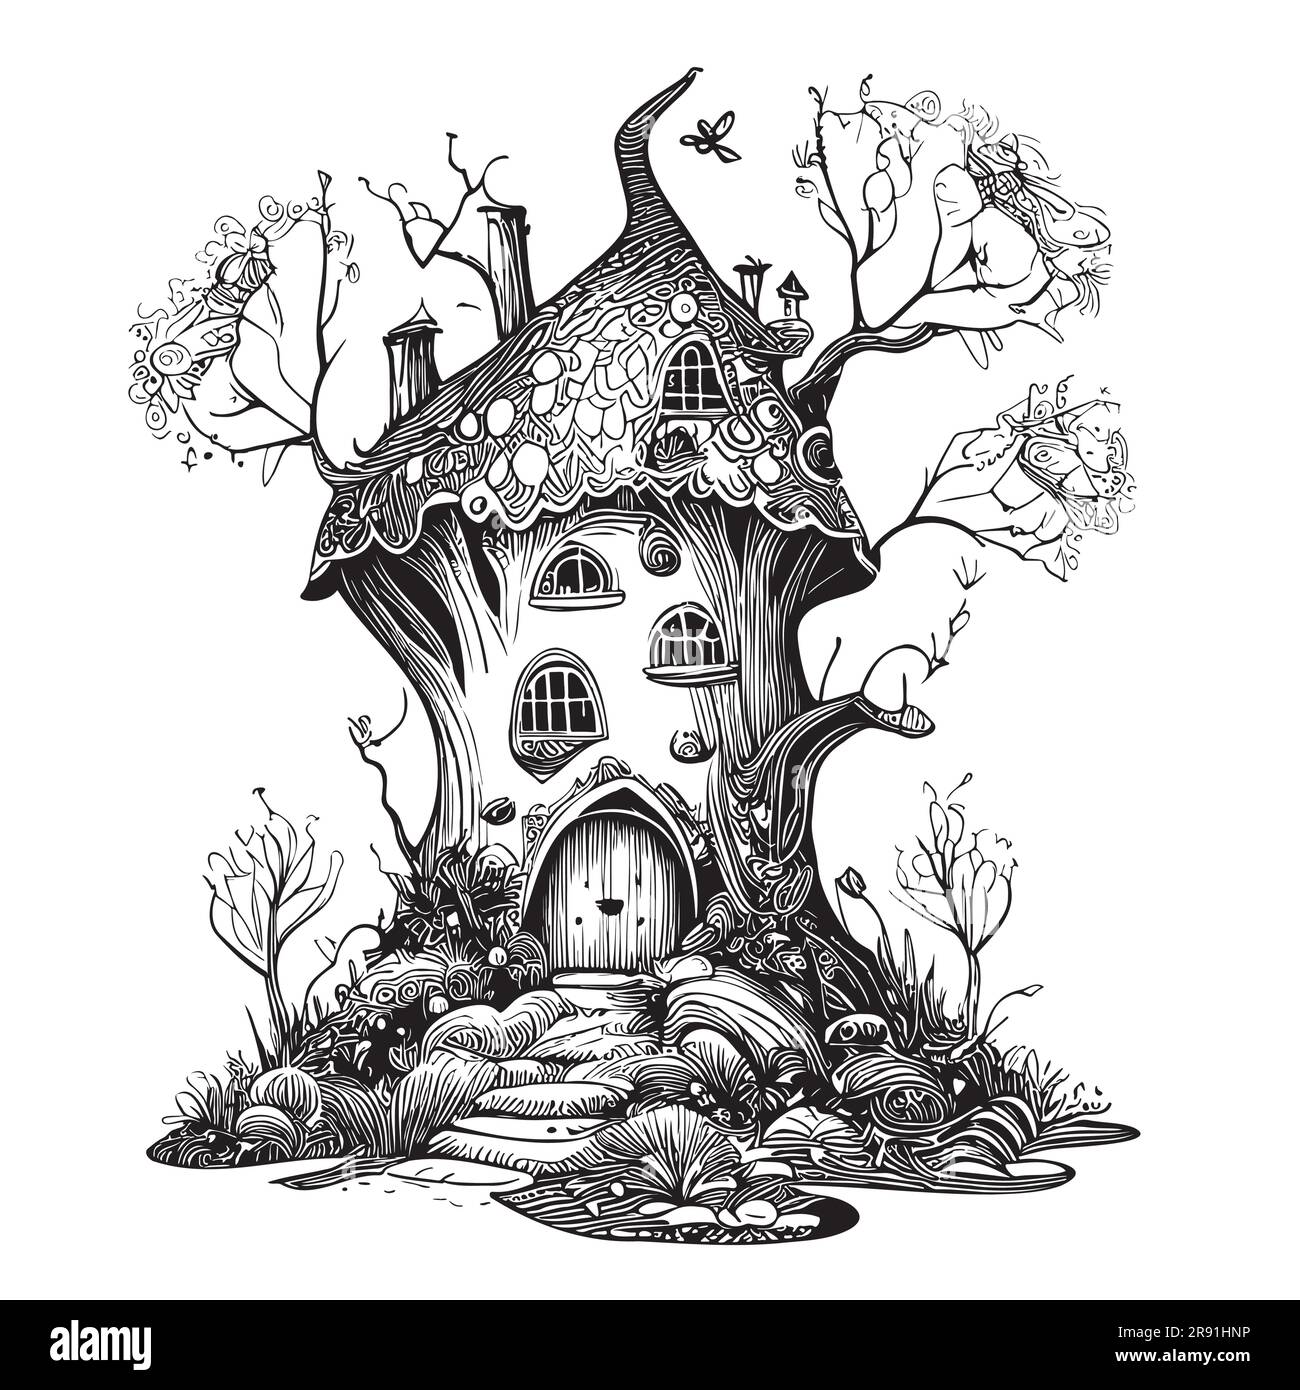 Schizzo della casa magica disegnato a mano in stile doodle illustrazione da favola Illustrazione Vettoriale